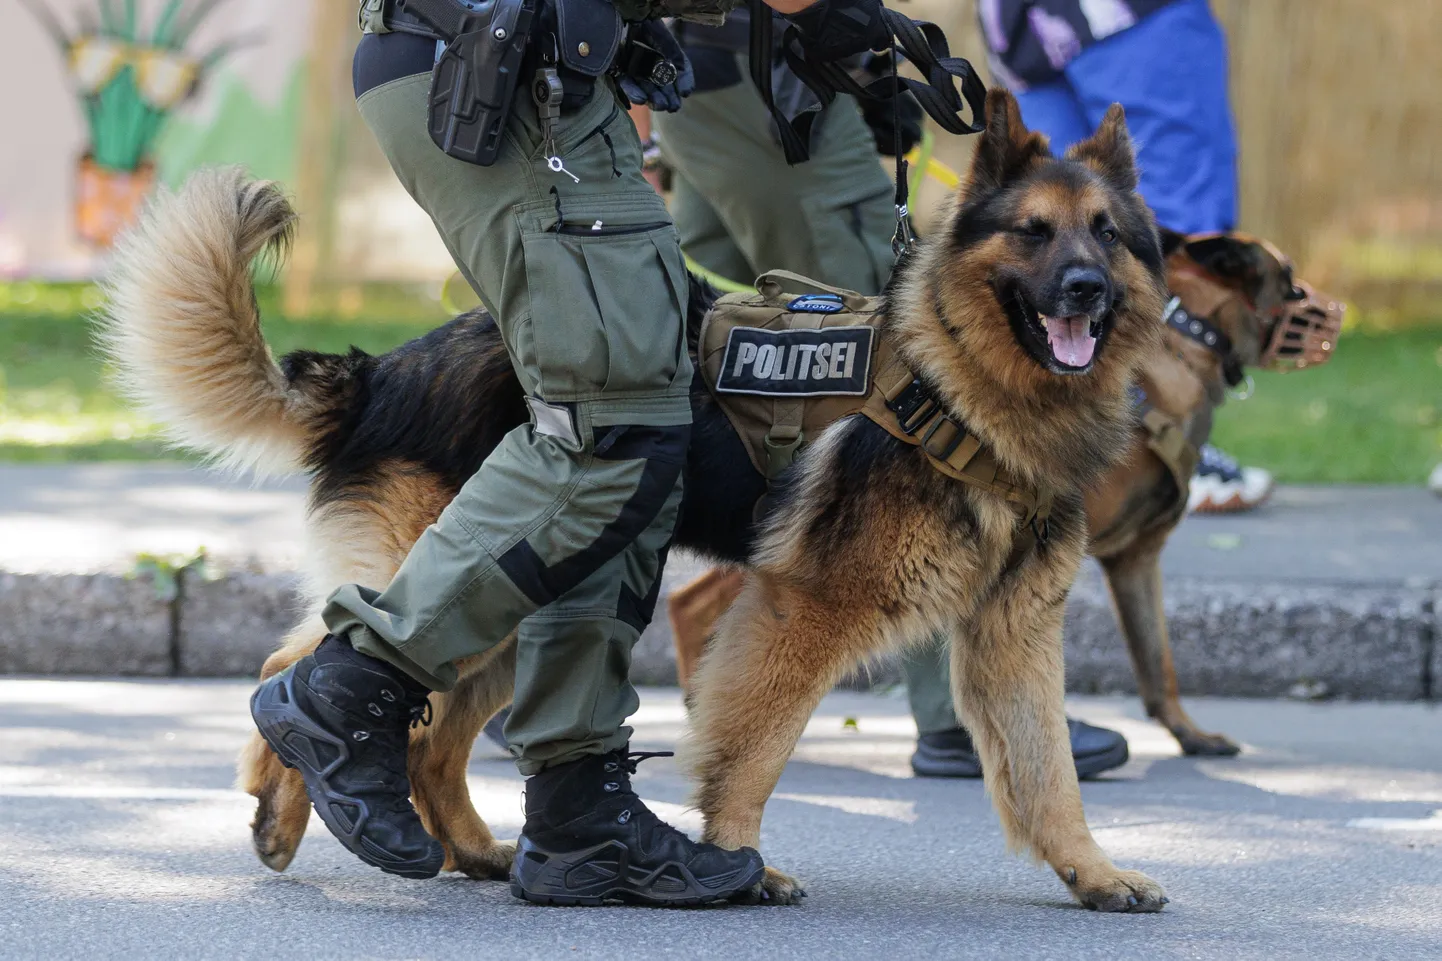 Tartu raekoja platsil tutvustavad teenistuskoerte tööd politseikoerad ja koerajuhid. Pilt on illustratiivne.